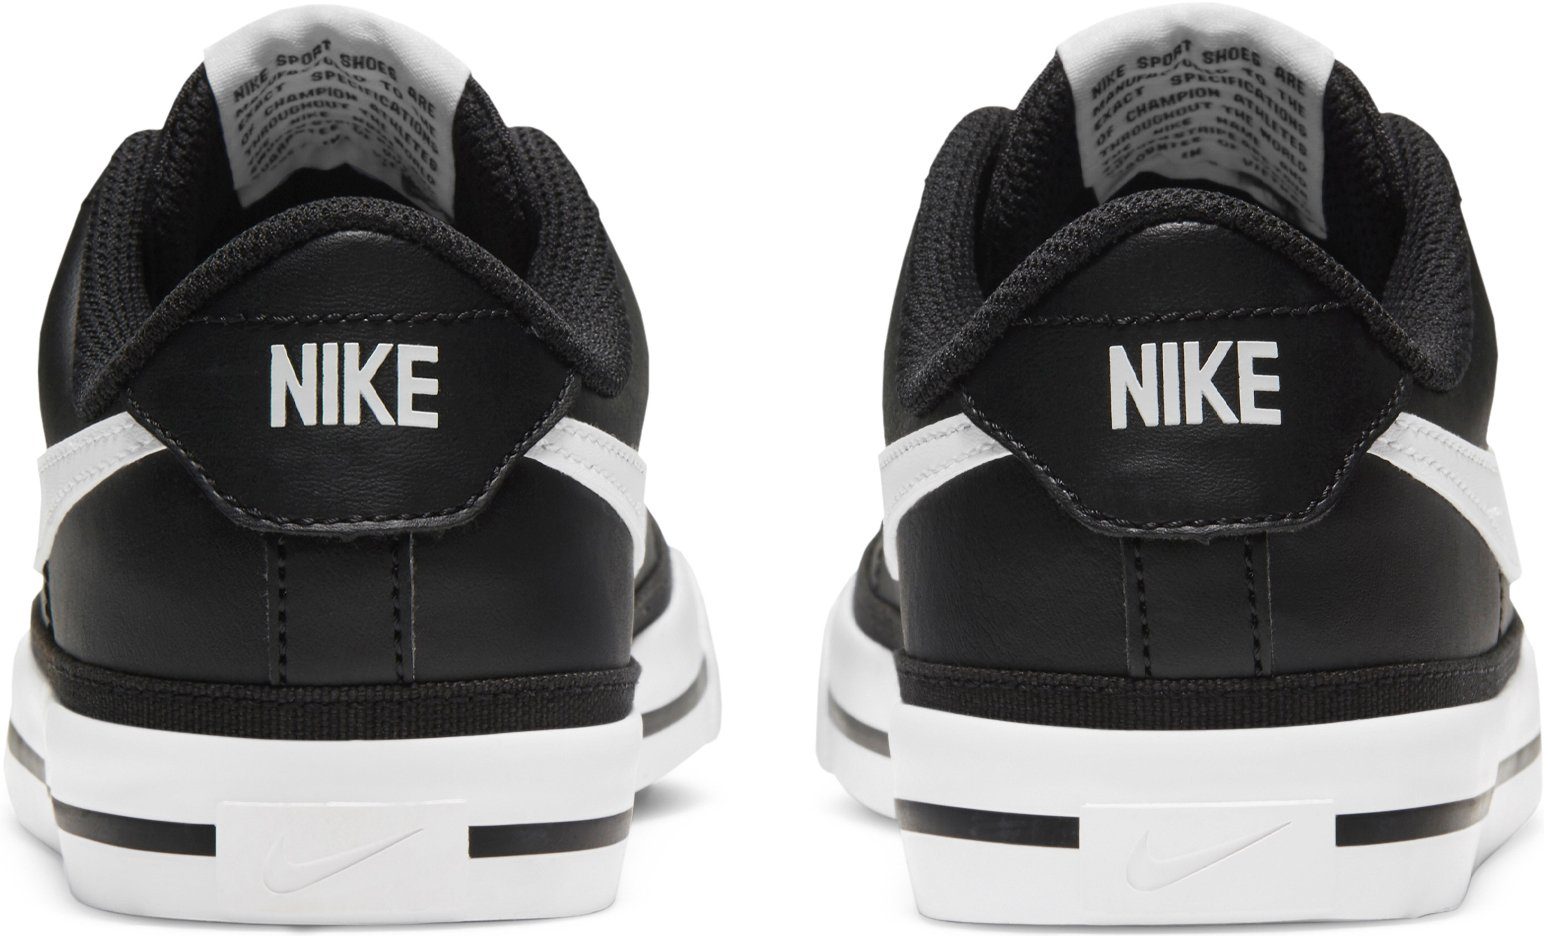 COURT Sneaker Nike (GS) LEGACY Sportswear back/white